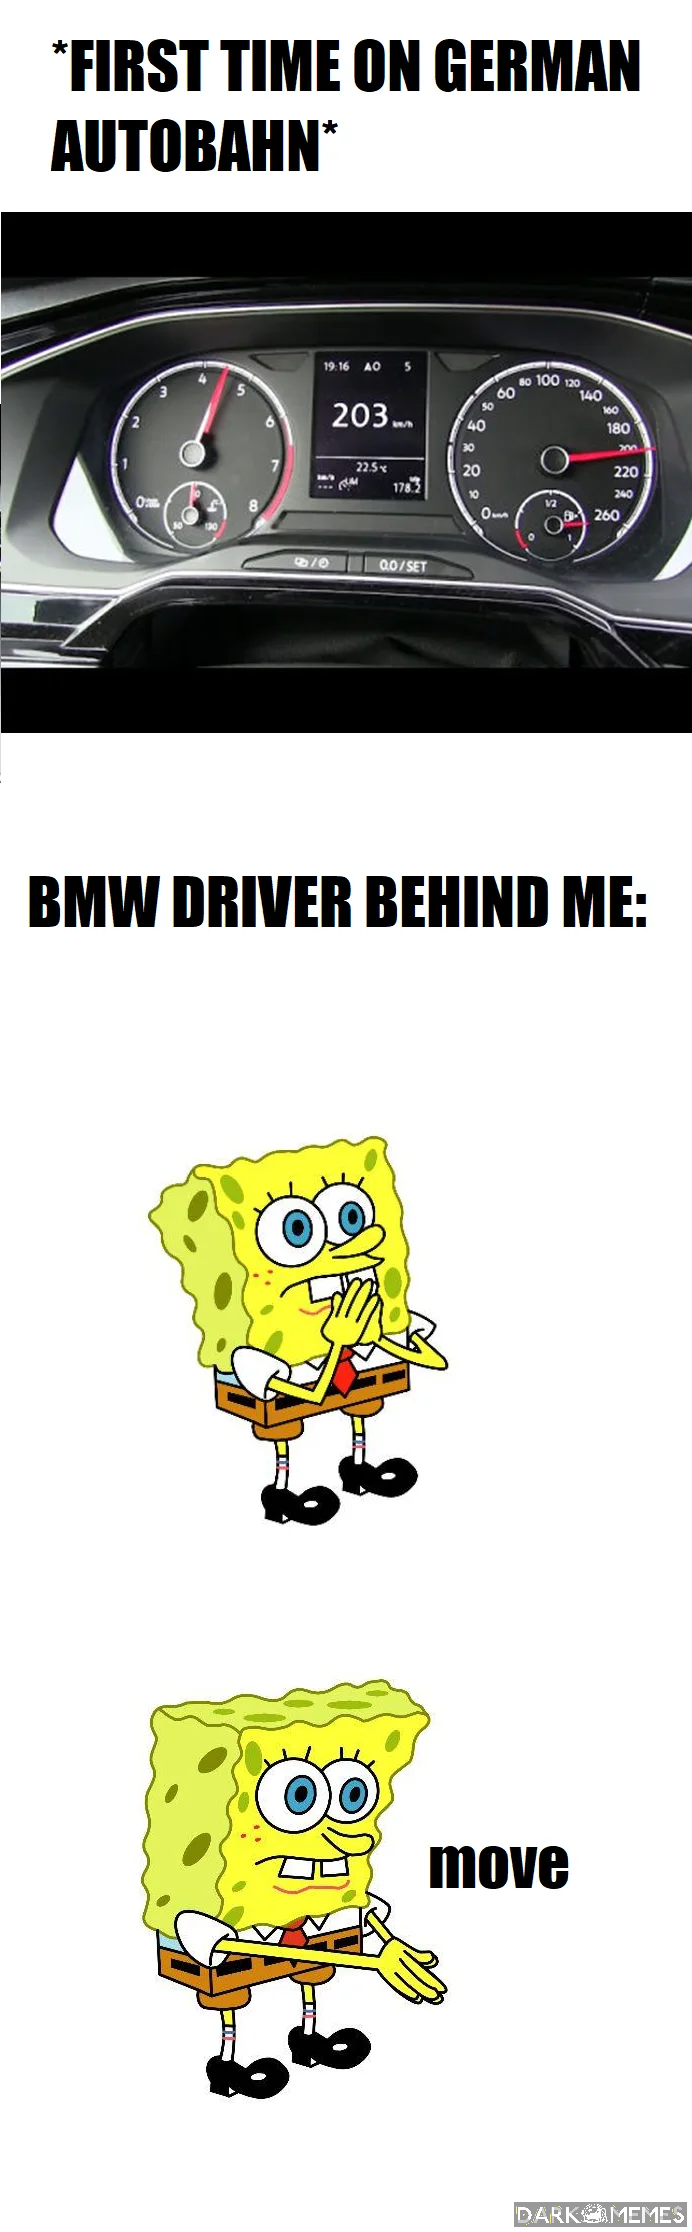 kierowcy bmw